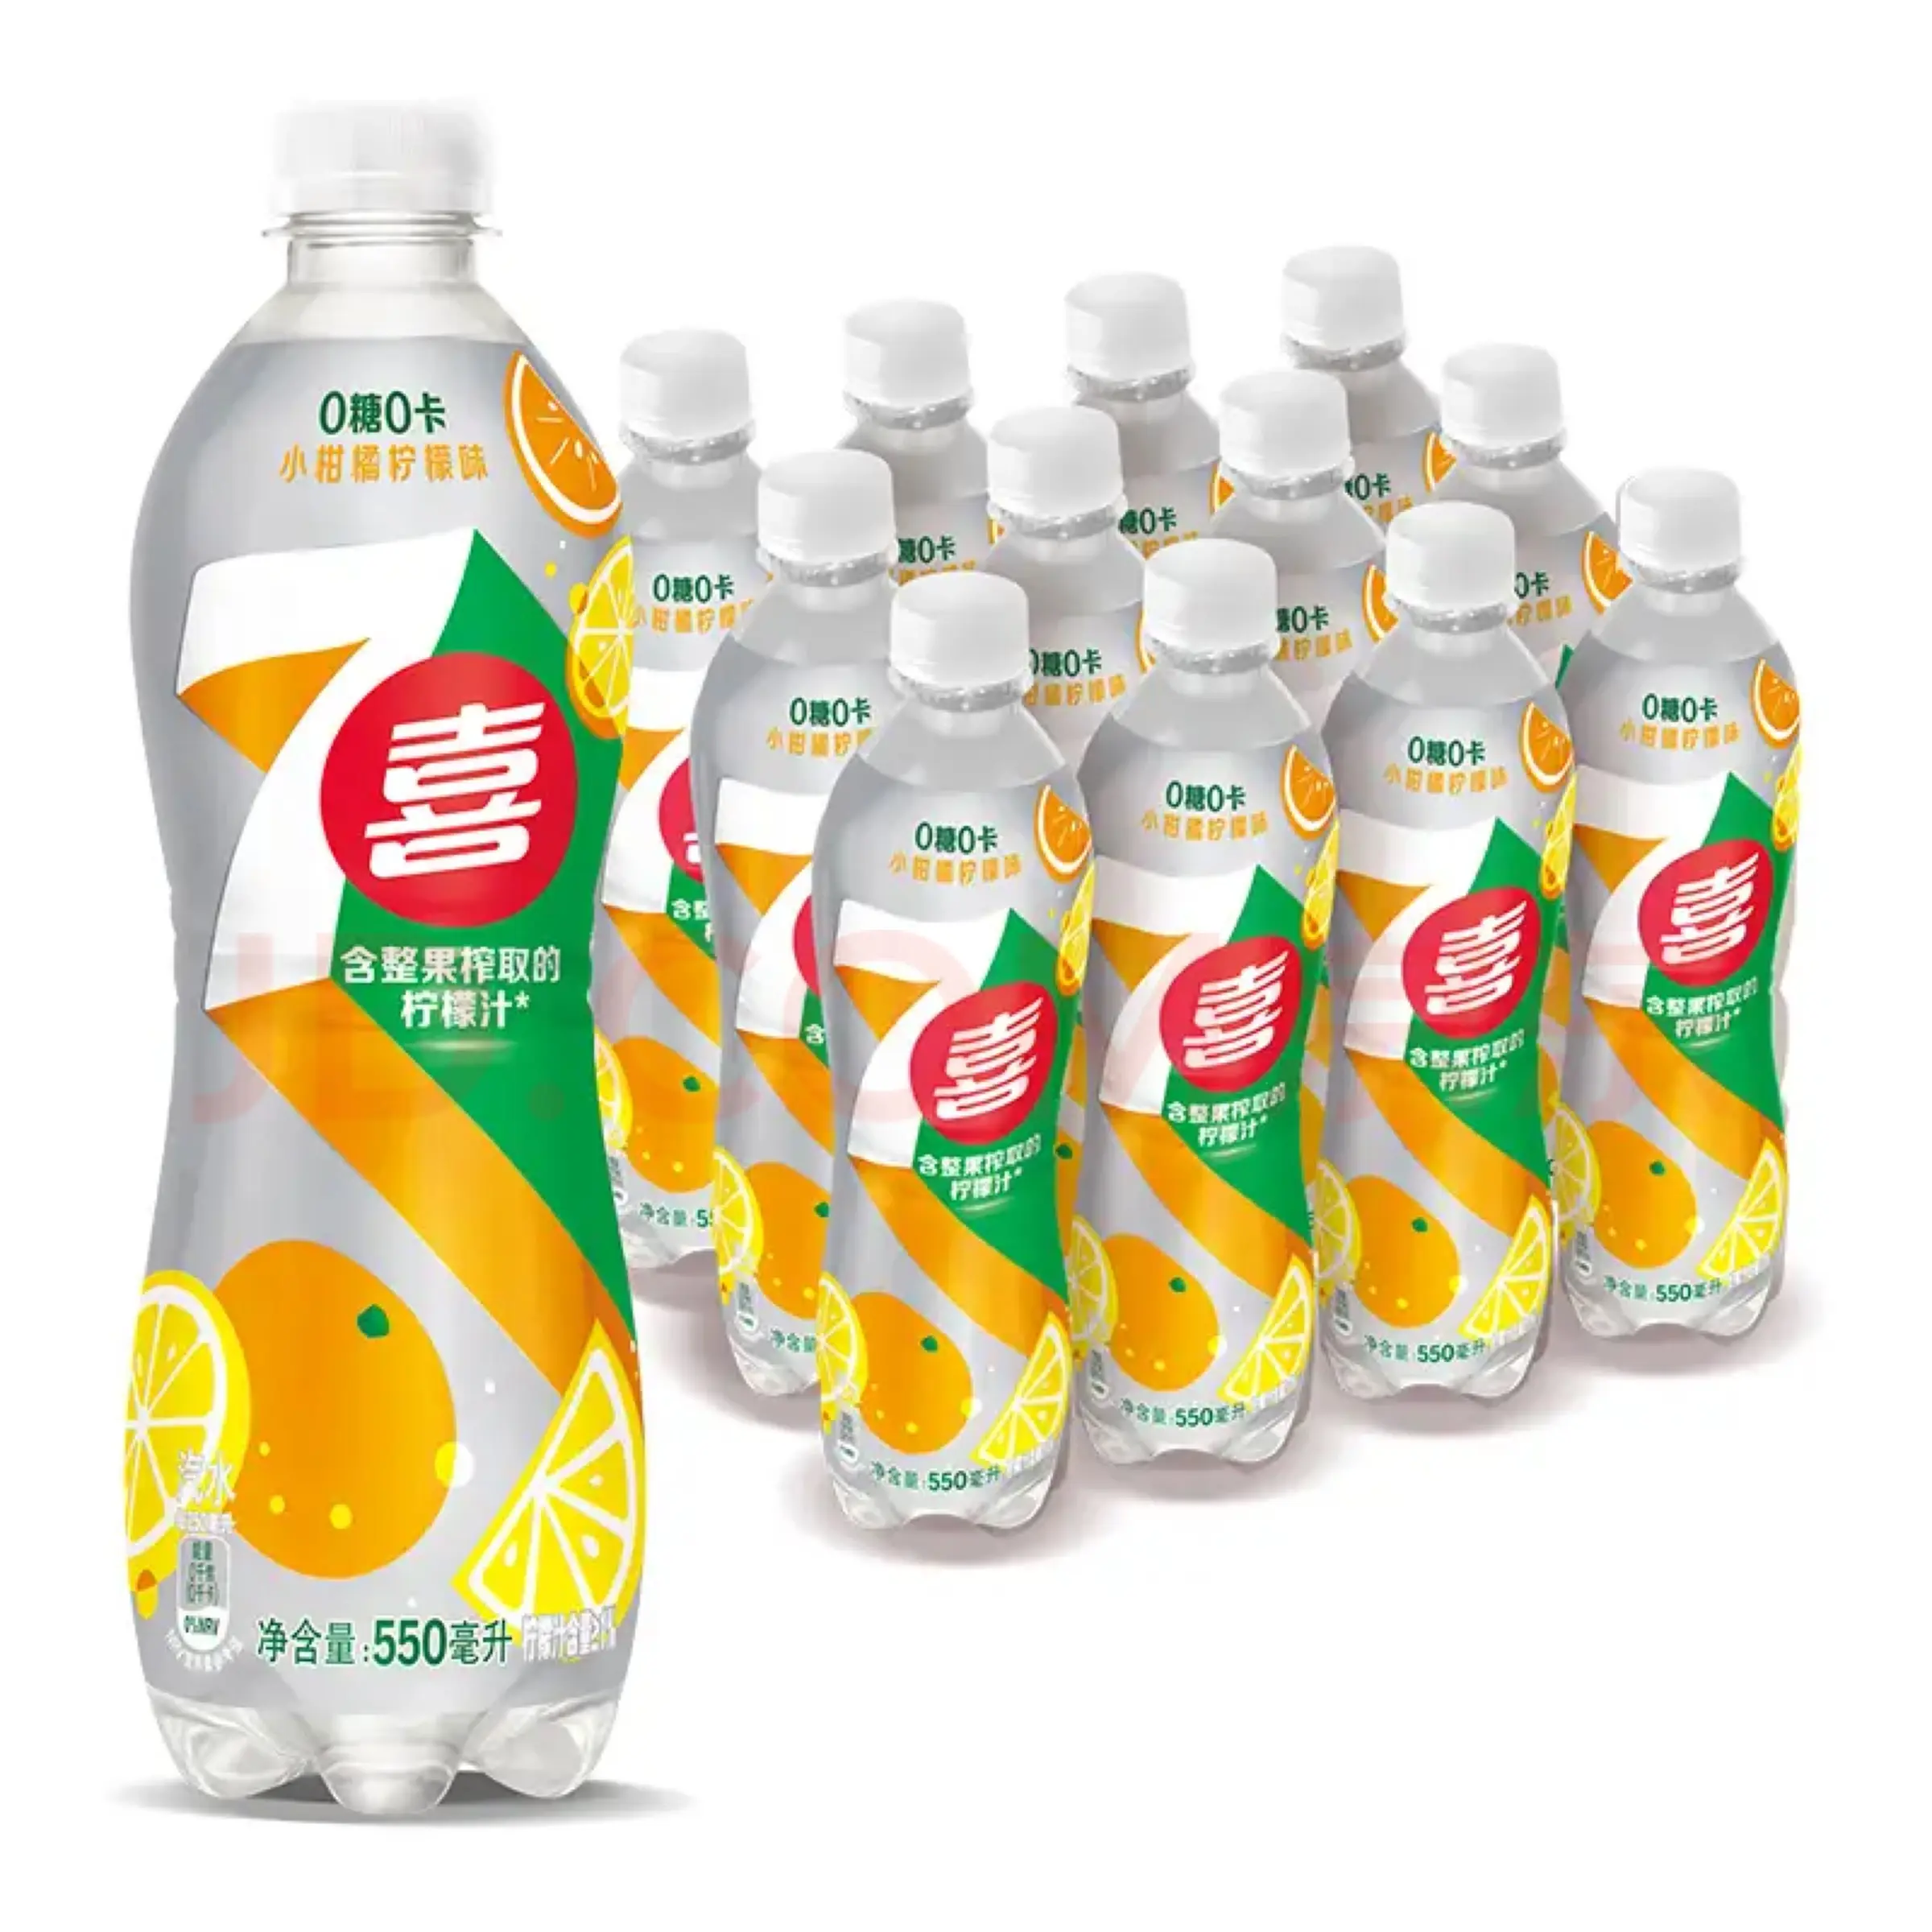 7 Up напиток в бутылках безалкогольный напиток со вкусом лимона 550 мл экзотических напитков